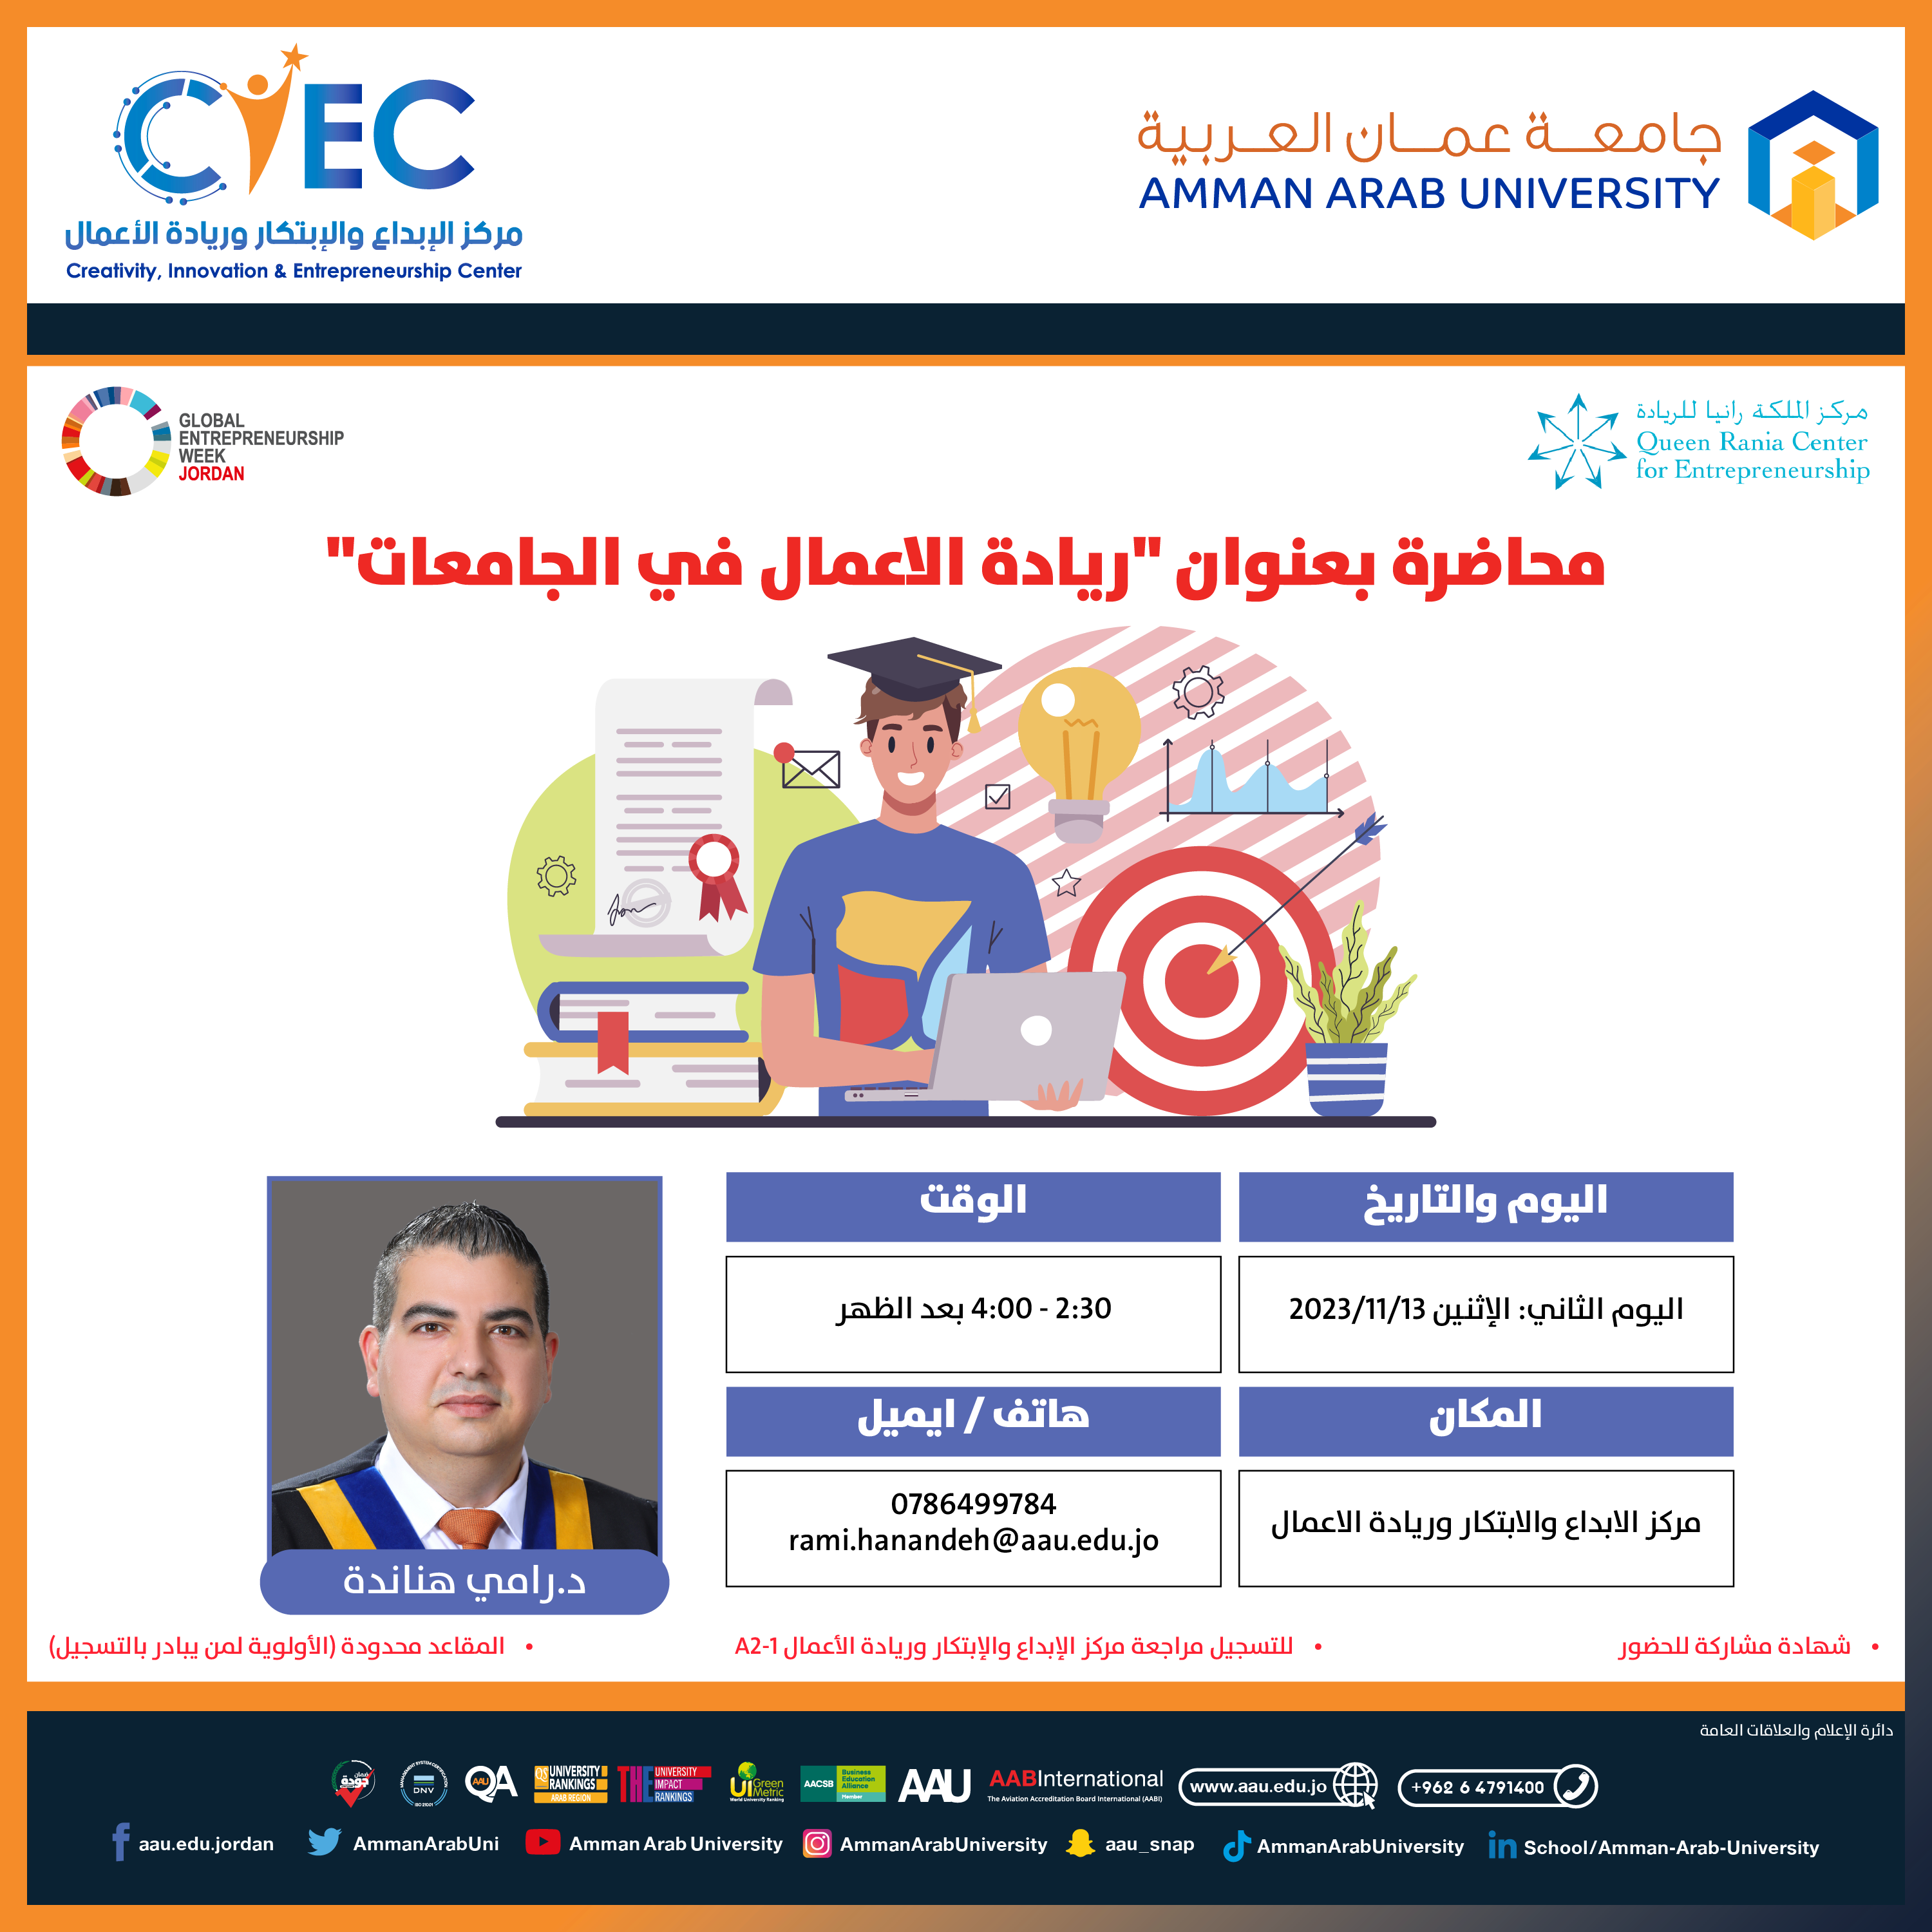 اعلان هام - التعرف على المحاضرات والورش التدريبية للأسبوع العالمي لريادة الأعمال في جامعة عمان العربية4